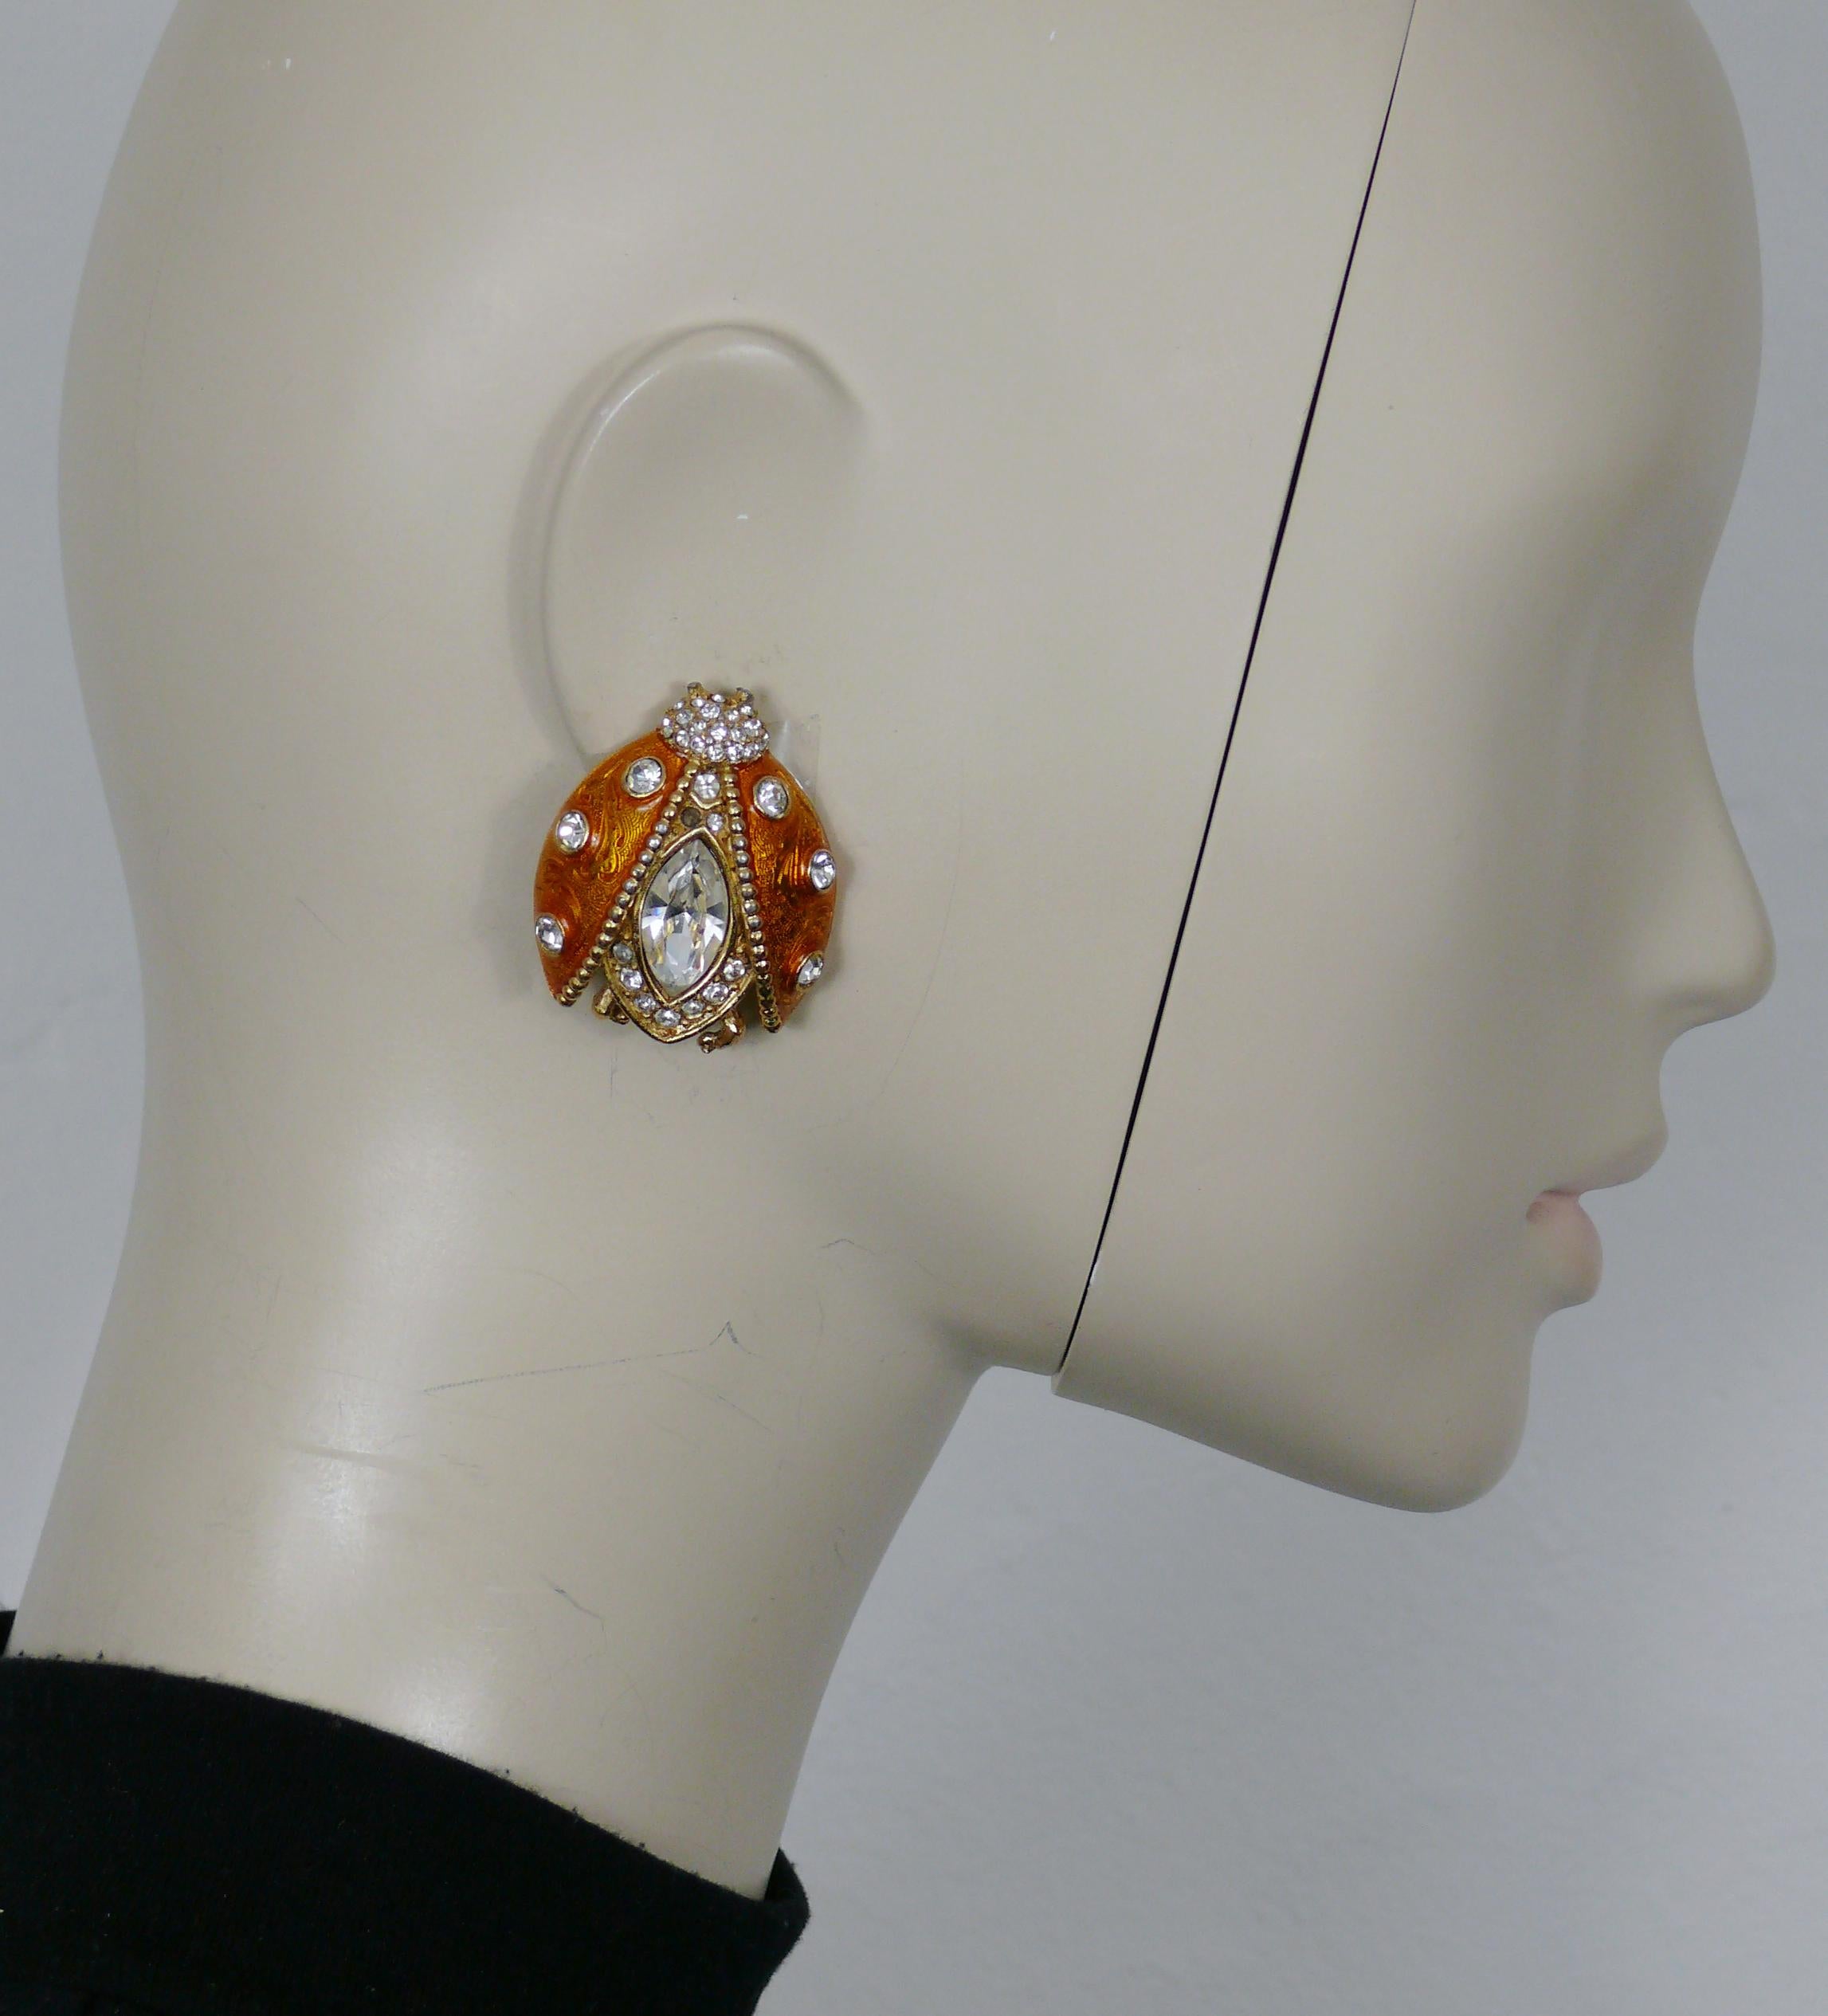 CHRISTIAN DIOR ikonische goldfarbene Marienkäfer-Ohrringe mit orangefarbener Emaille und klaren Kristallen verziert.

Markiert CHRISTIAN DIOR Boutique.

Ungefähre Maße: max. Höhe ca. 3,9 cm (1,54 Zoll) / max. Breite ca. 3,3 cm (1,30